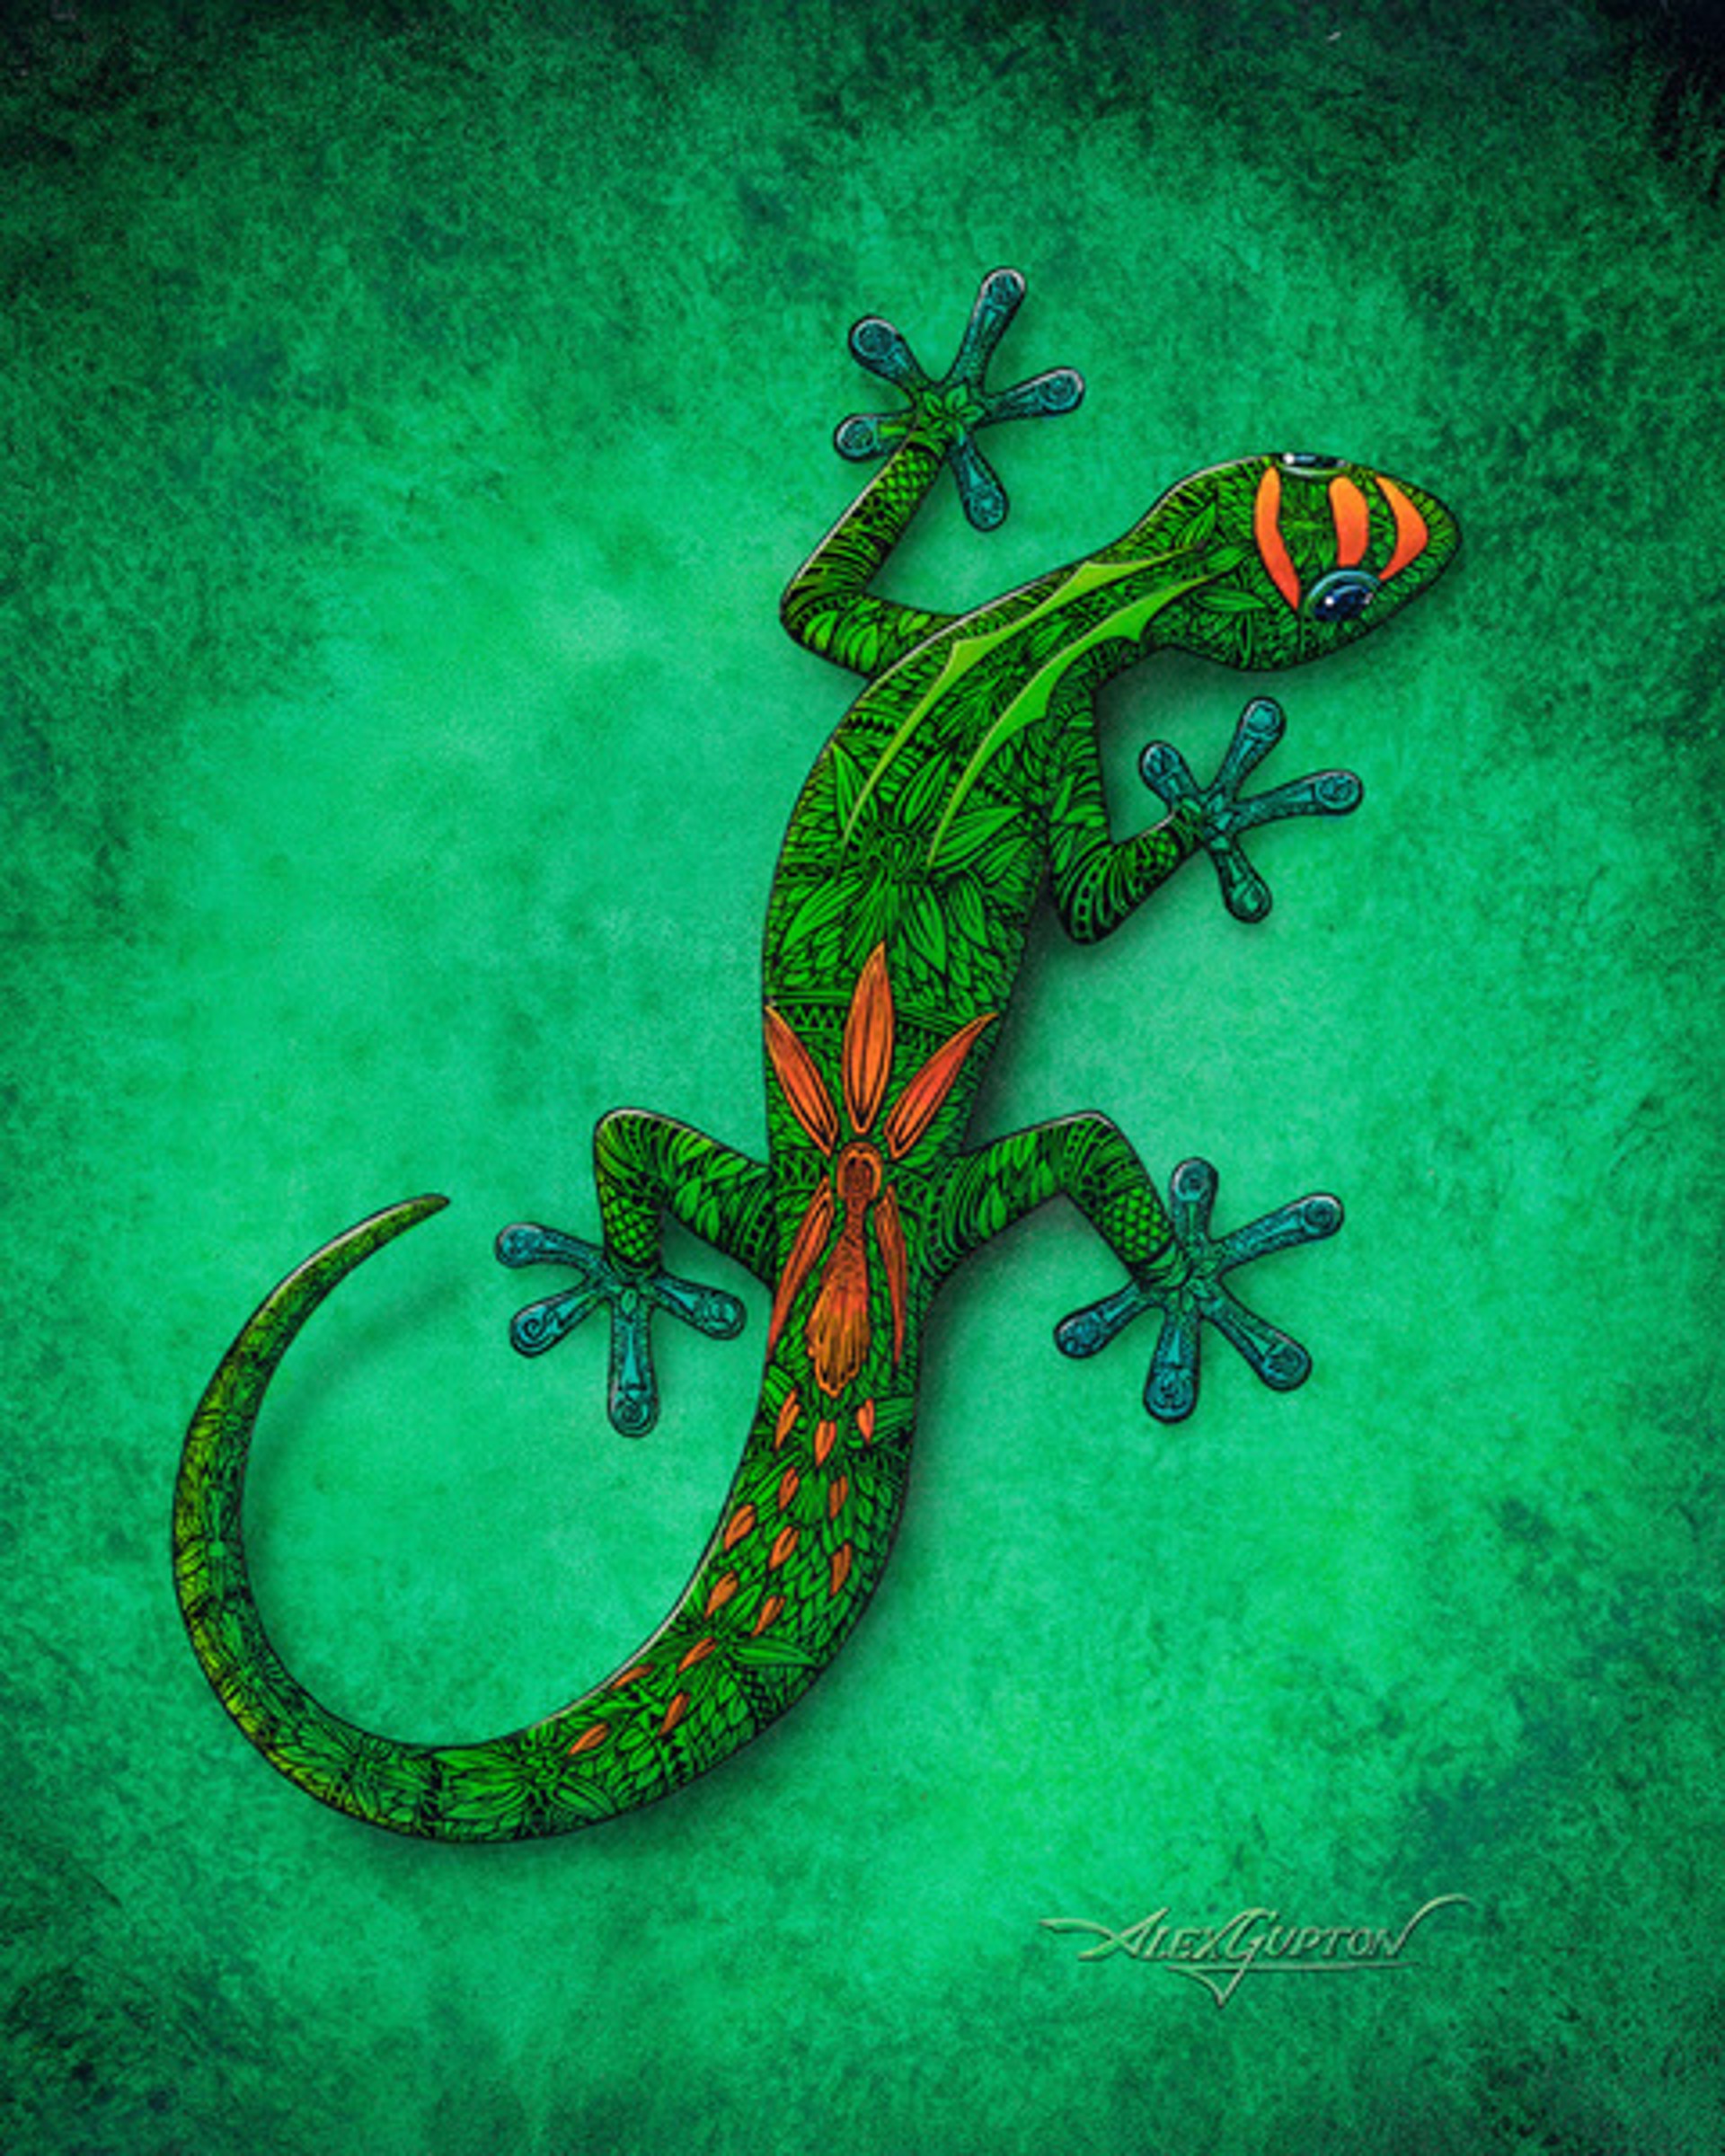 New Gecko by Alex Gupton